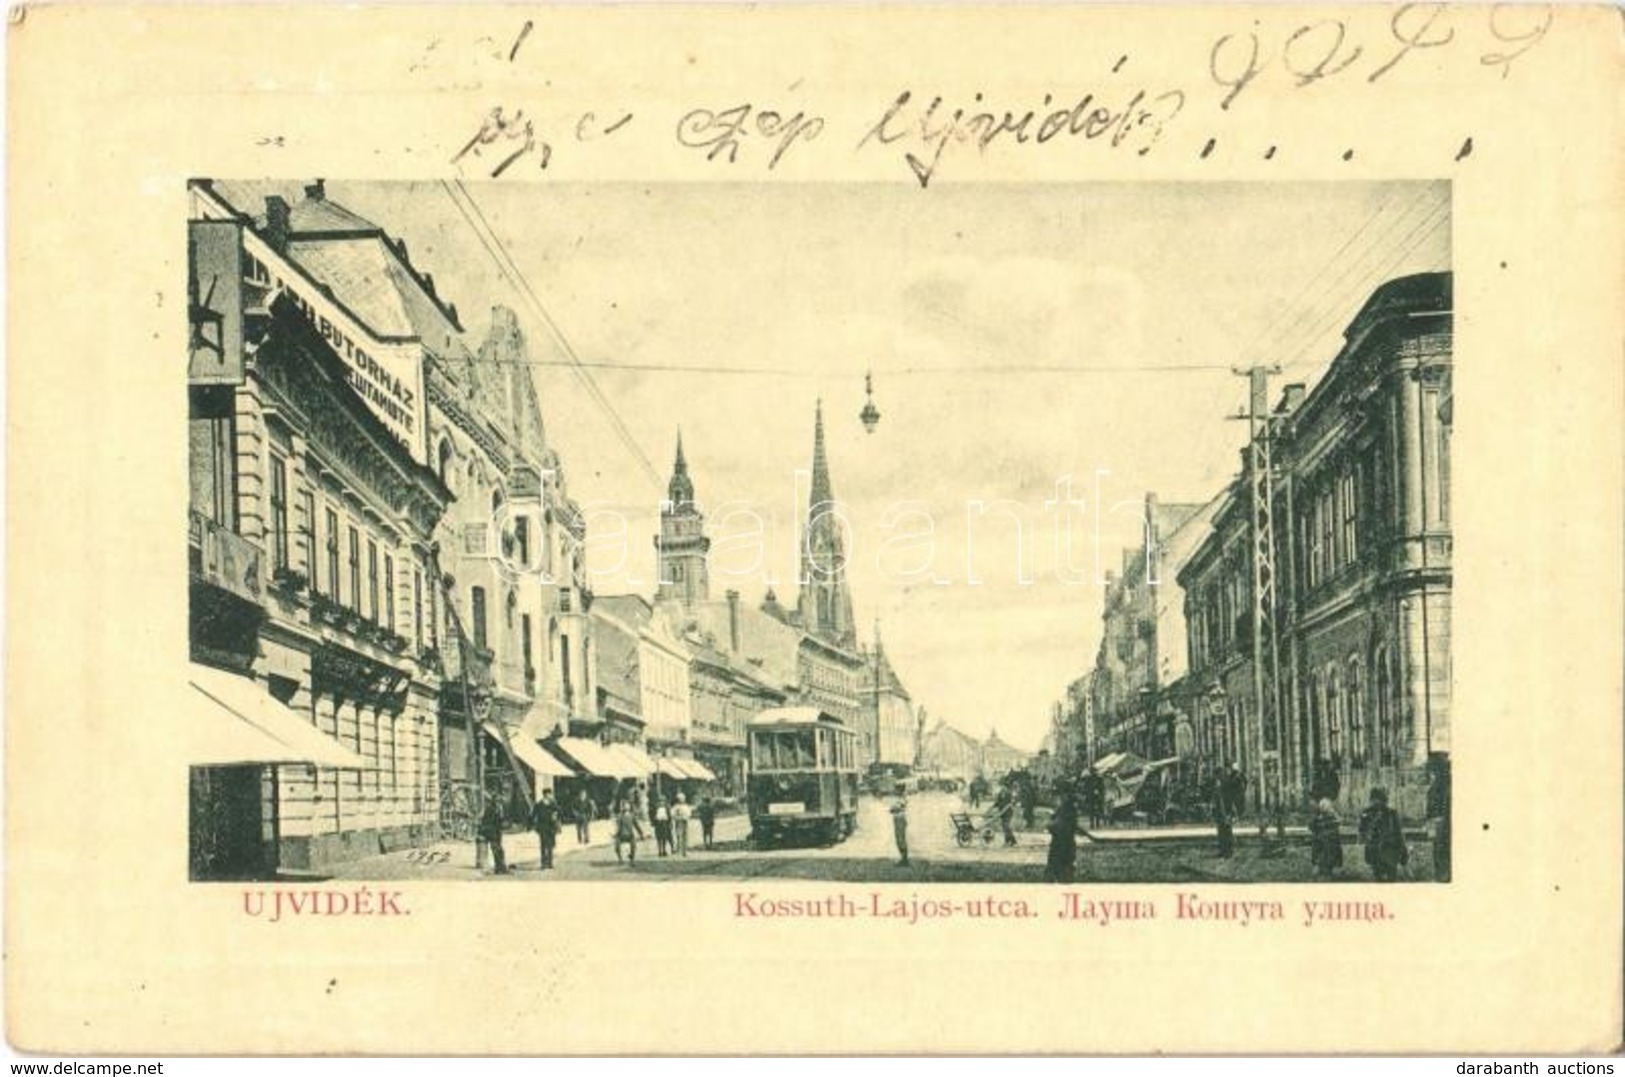 T2/T3 1912 Újvidék, Novi Sad; Kossuth Lajos Utca, Villamos, Bútorház, üzletek. W. L. Bp. 6348. / Street View, Tram, Furn - Non Classés